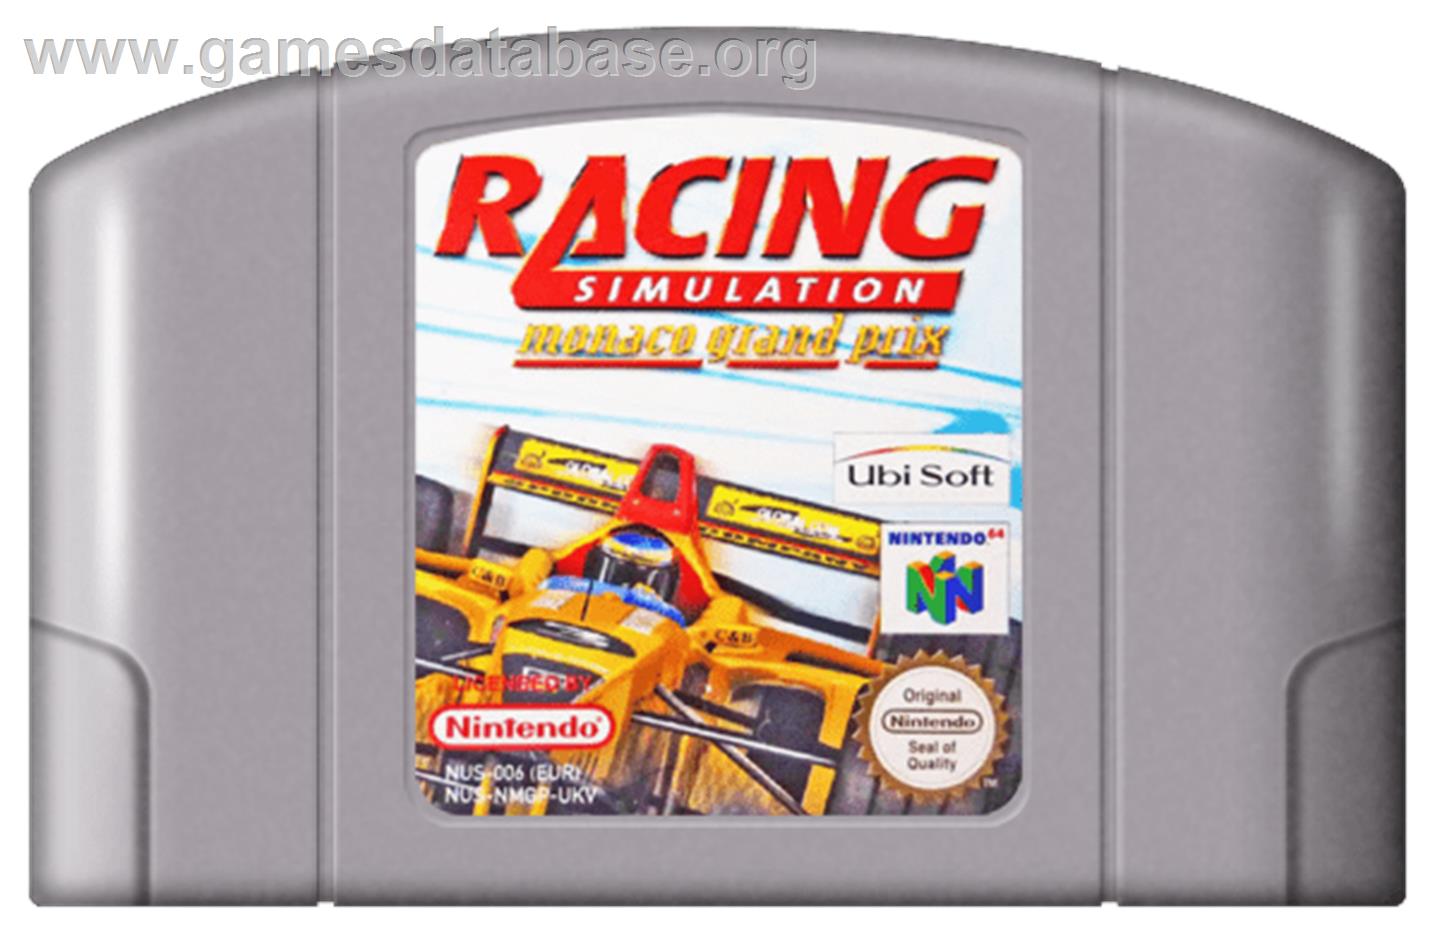 Monaco Grand Prix Racing Simulation 2 - Nintendo N64 - Artwork - Cartridge